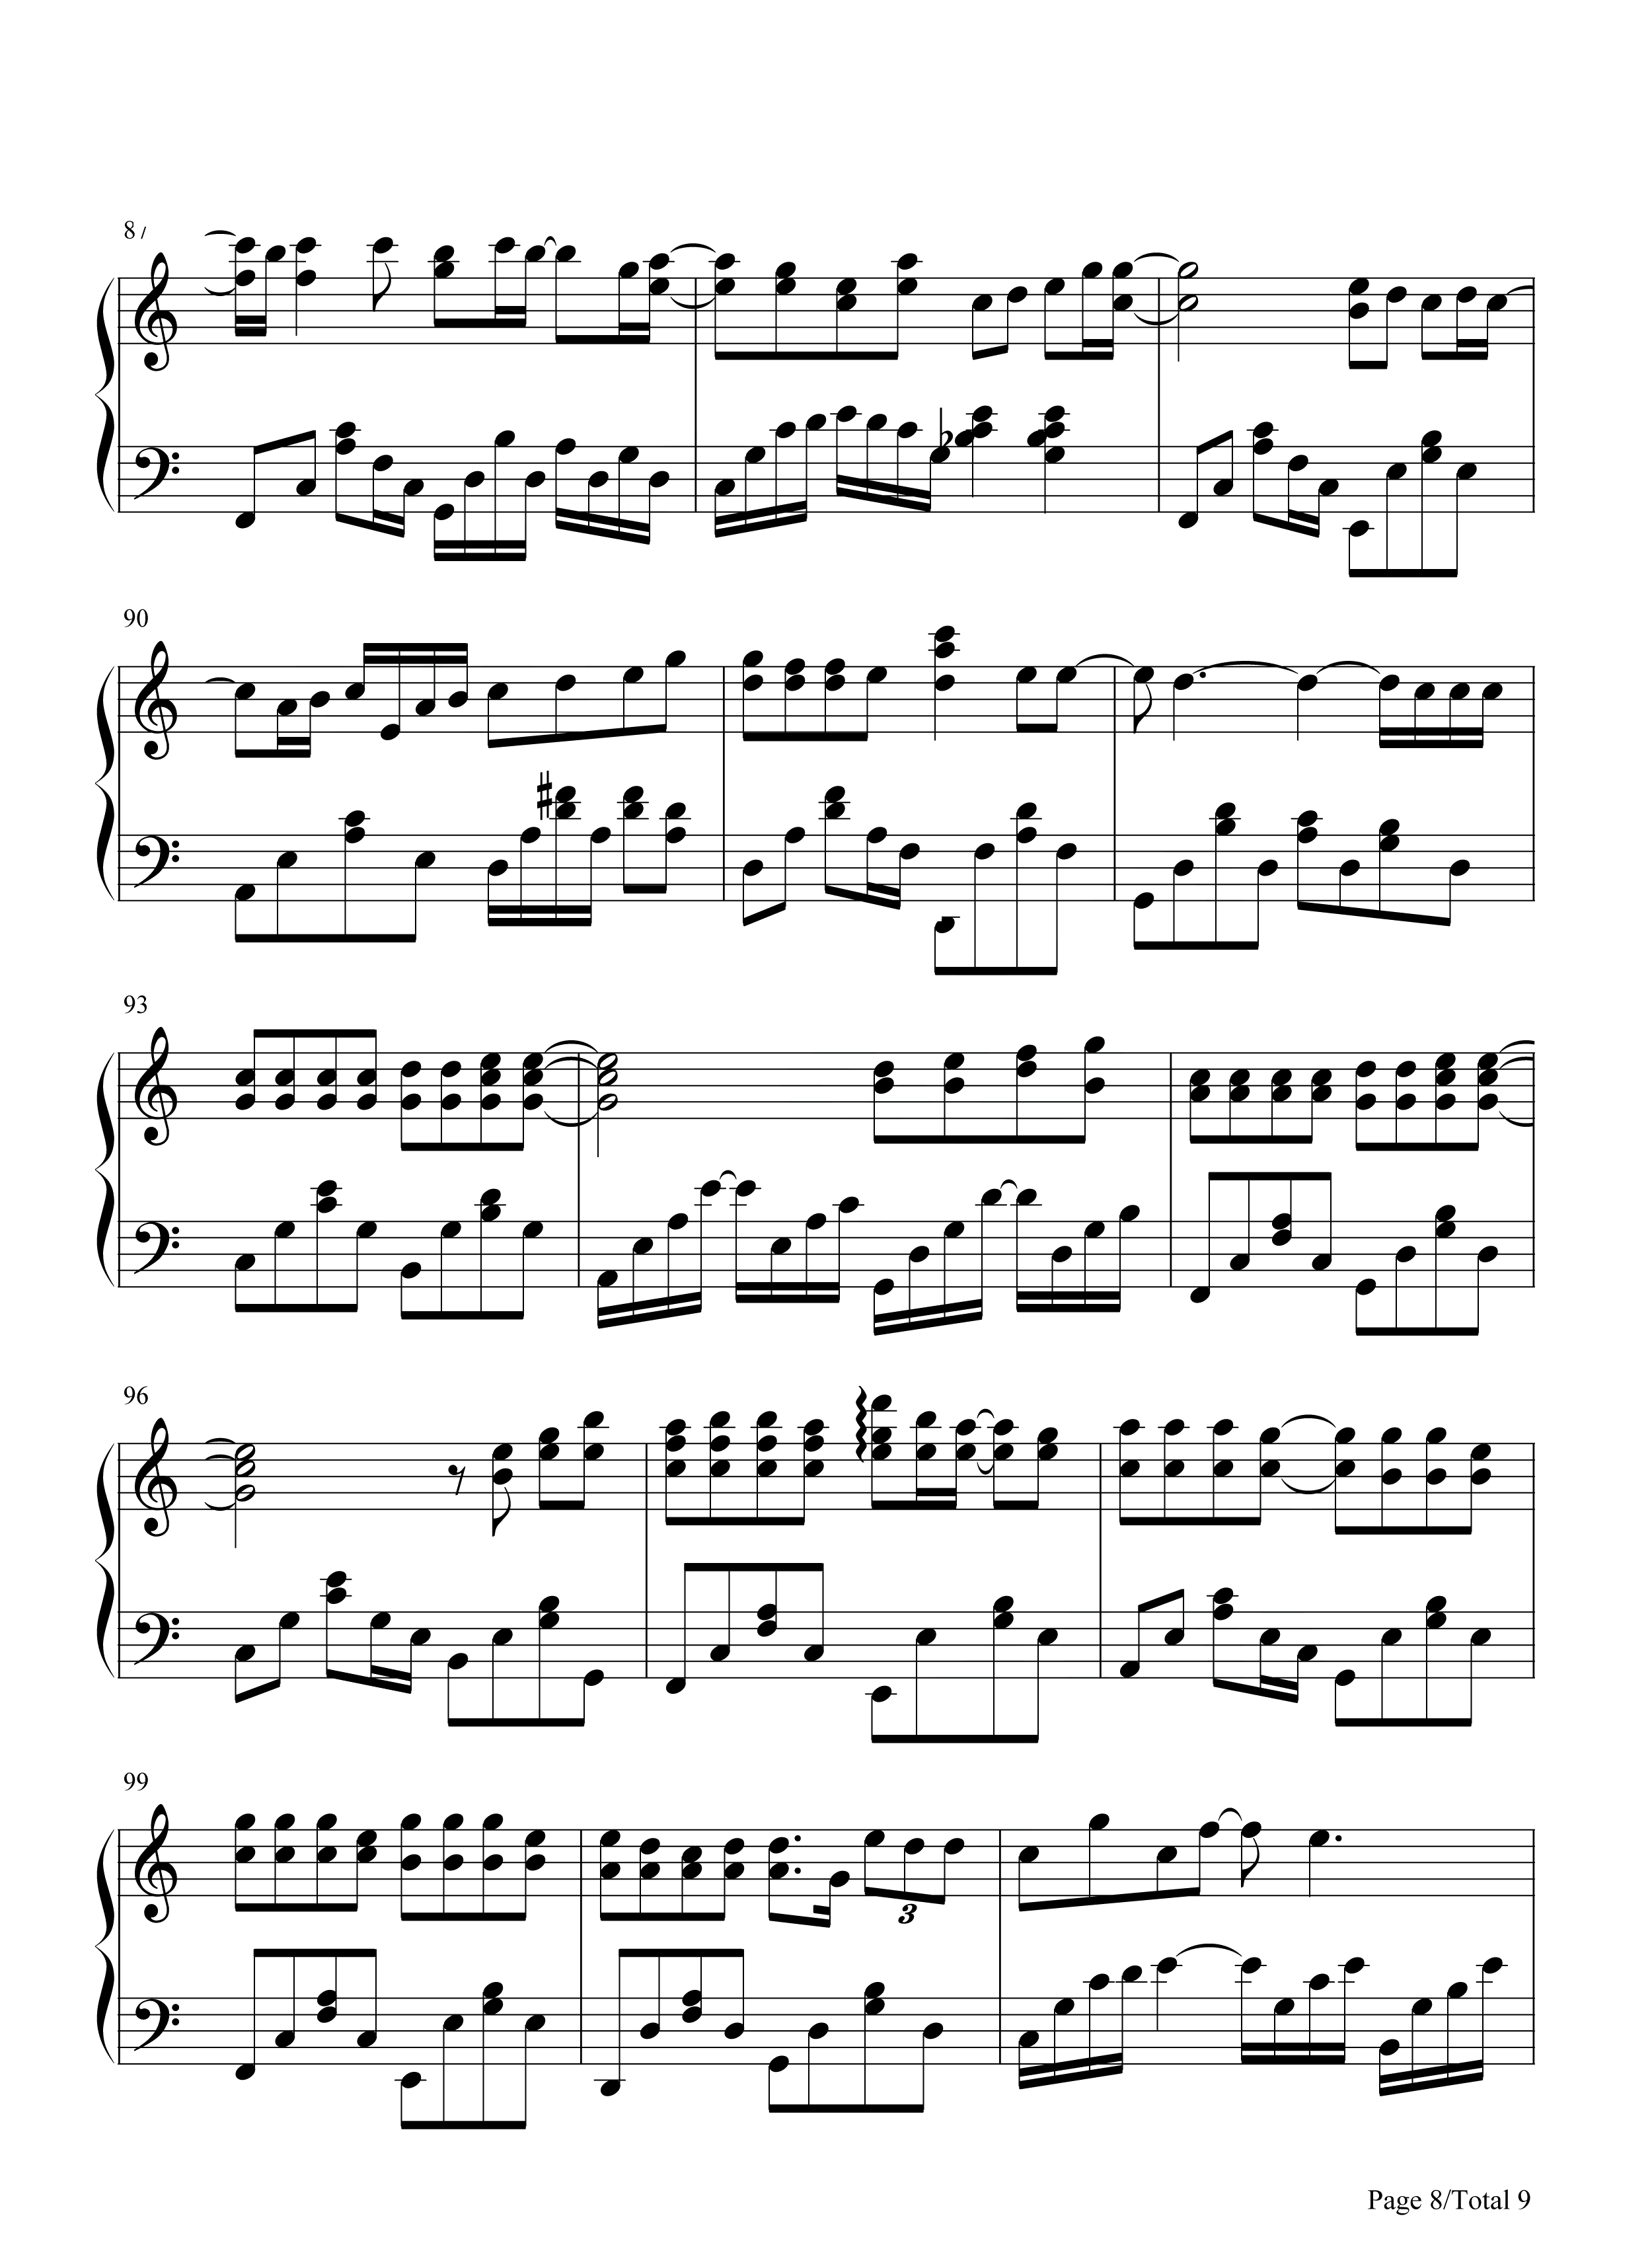 简易版《周杰伦歌曲串烧》钢琴谱 - 周杰伦C调简谱版 - 入门完整版曲谱 - 钢琴简谱